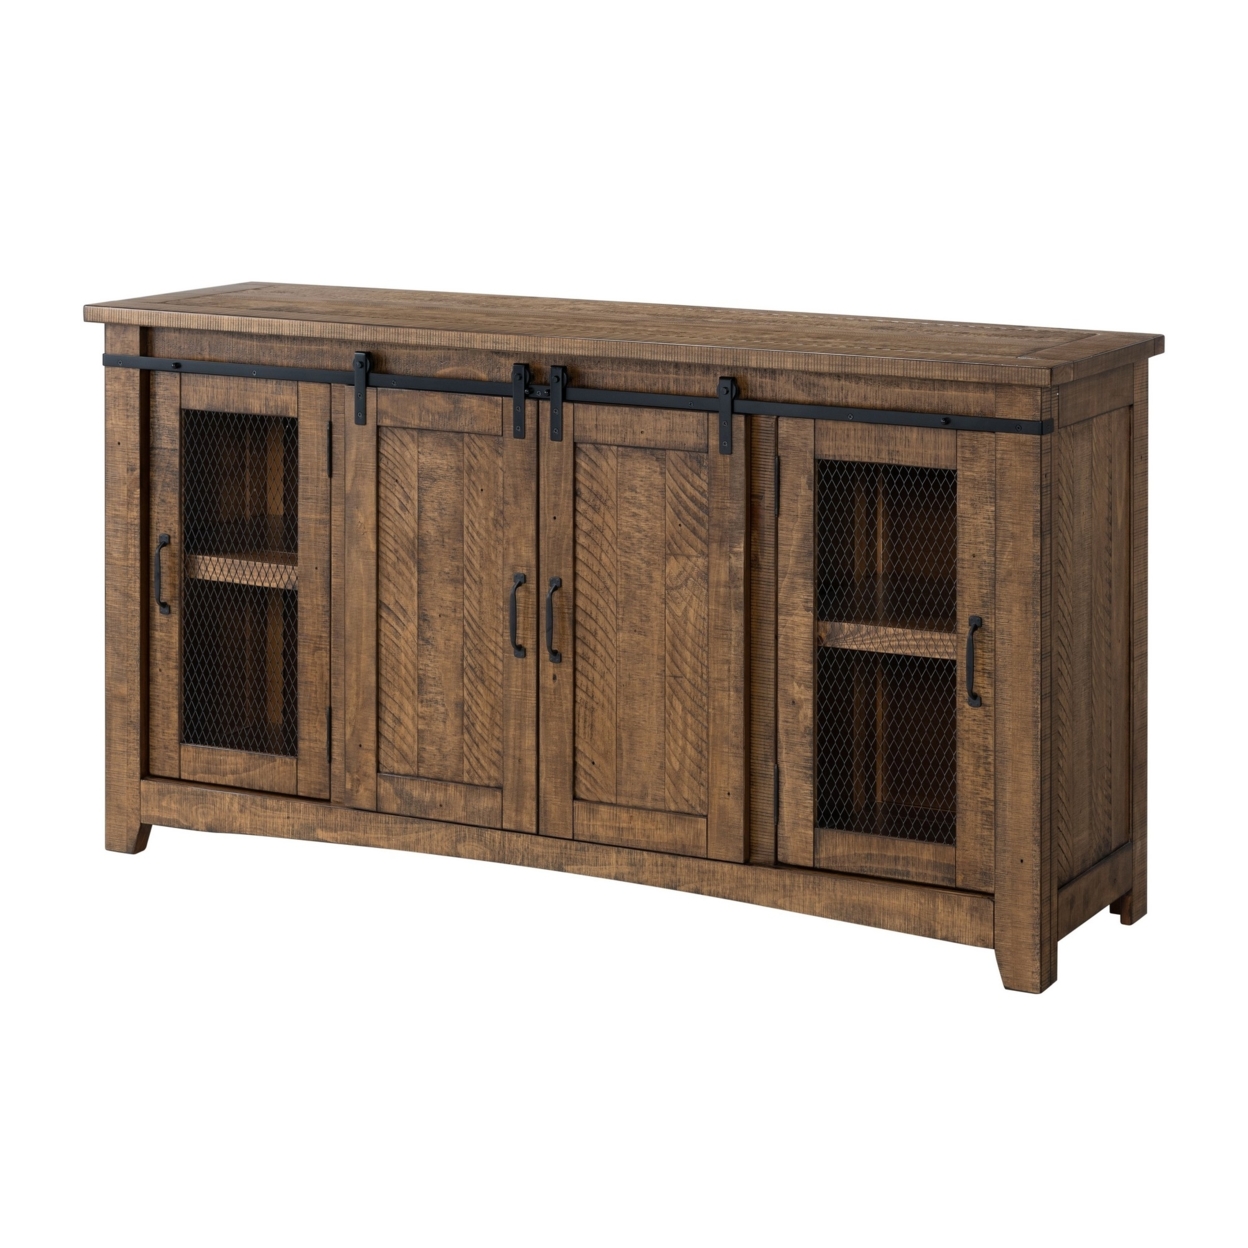 Saltoro Sherpi 65 Inch Rustic Wooden TV Stand with 2 Door Cabinet, Brown